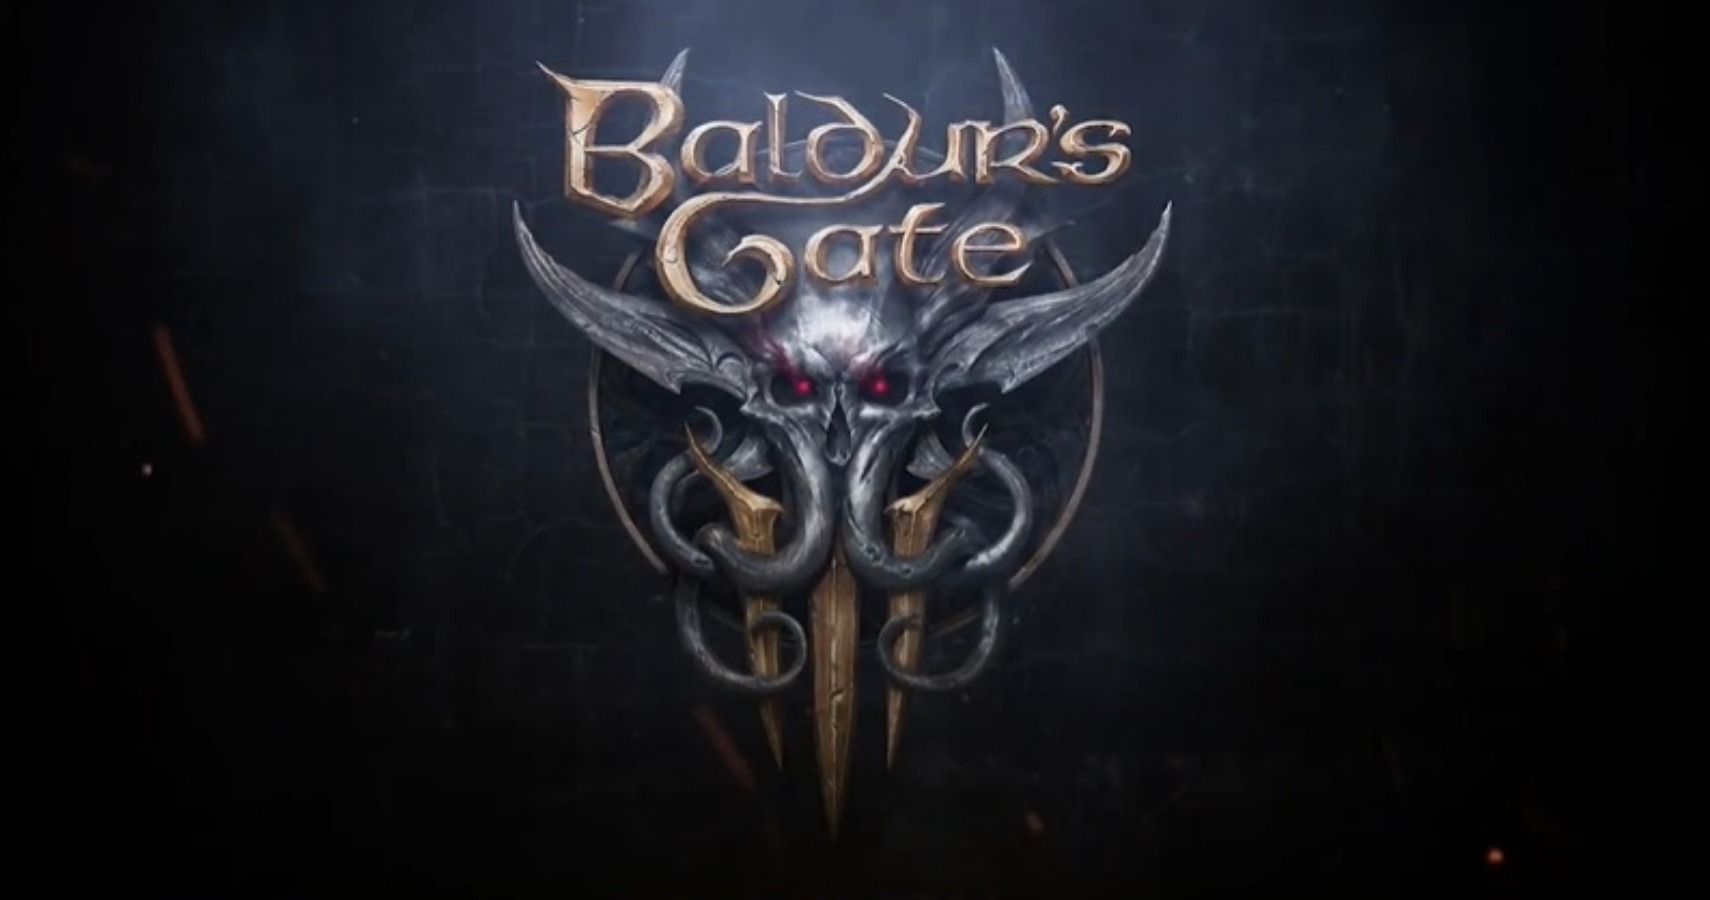 baldurs gate 3 7 release date